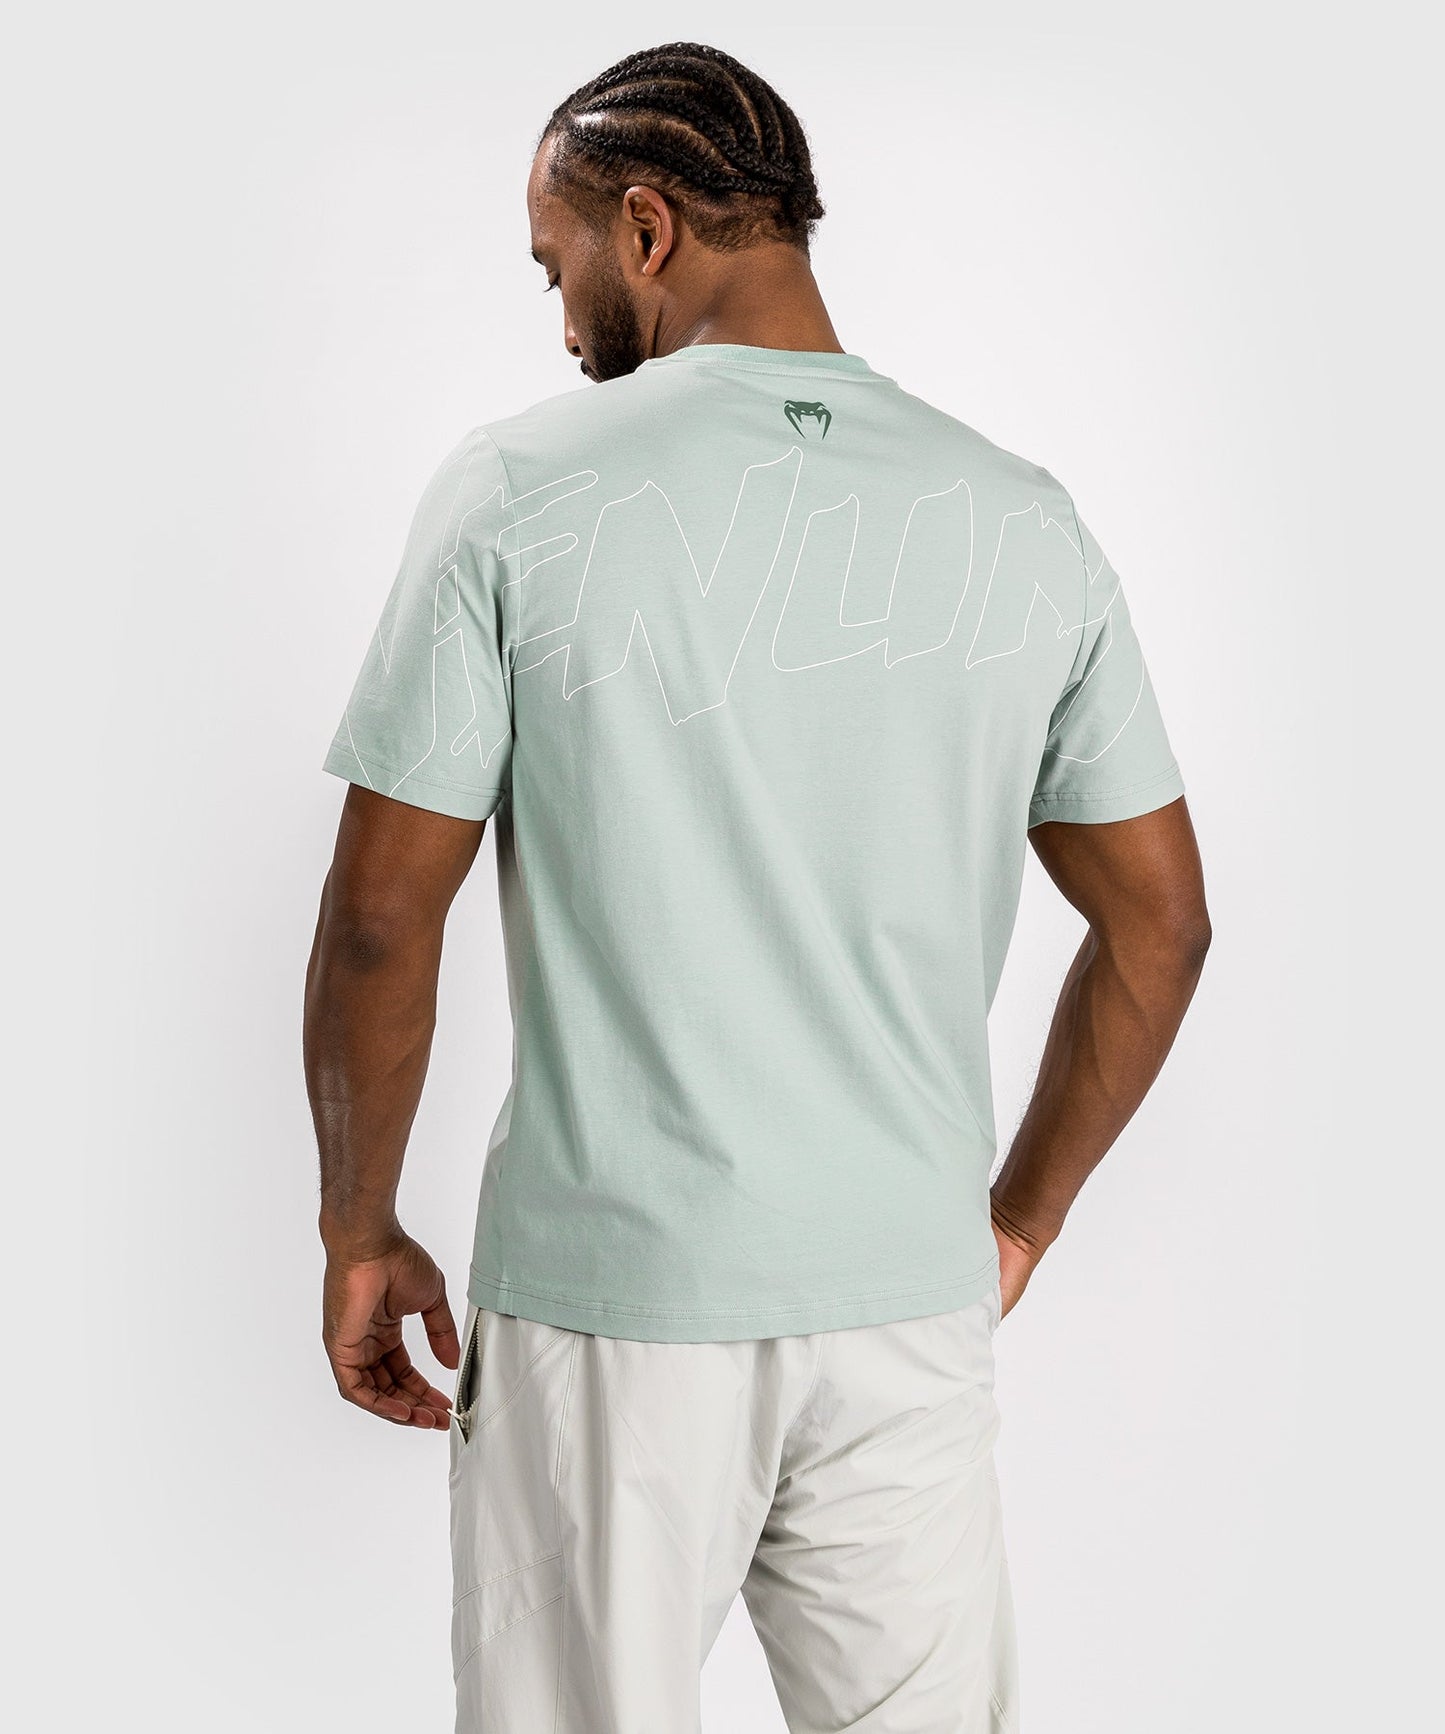 Venum Snake Print T-Shirt - Aqua Green